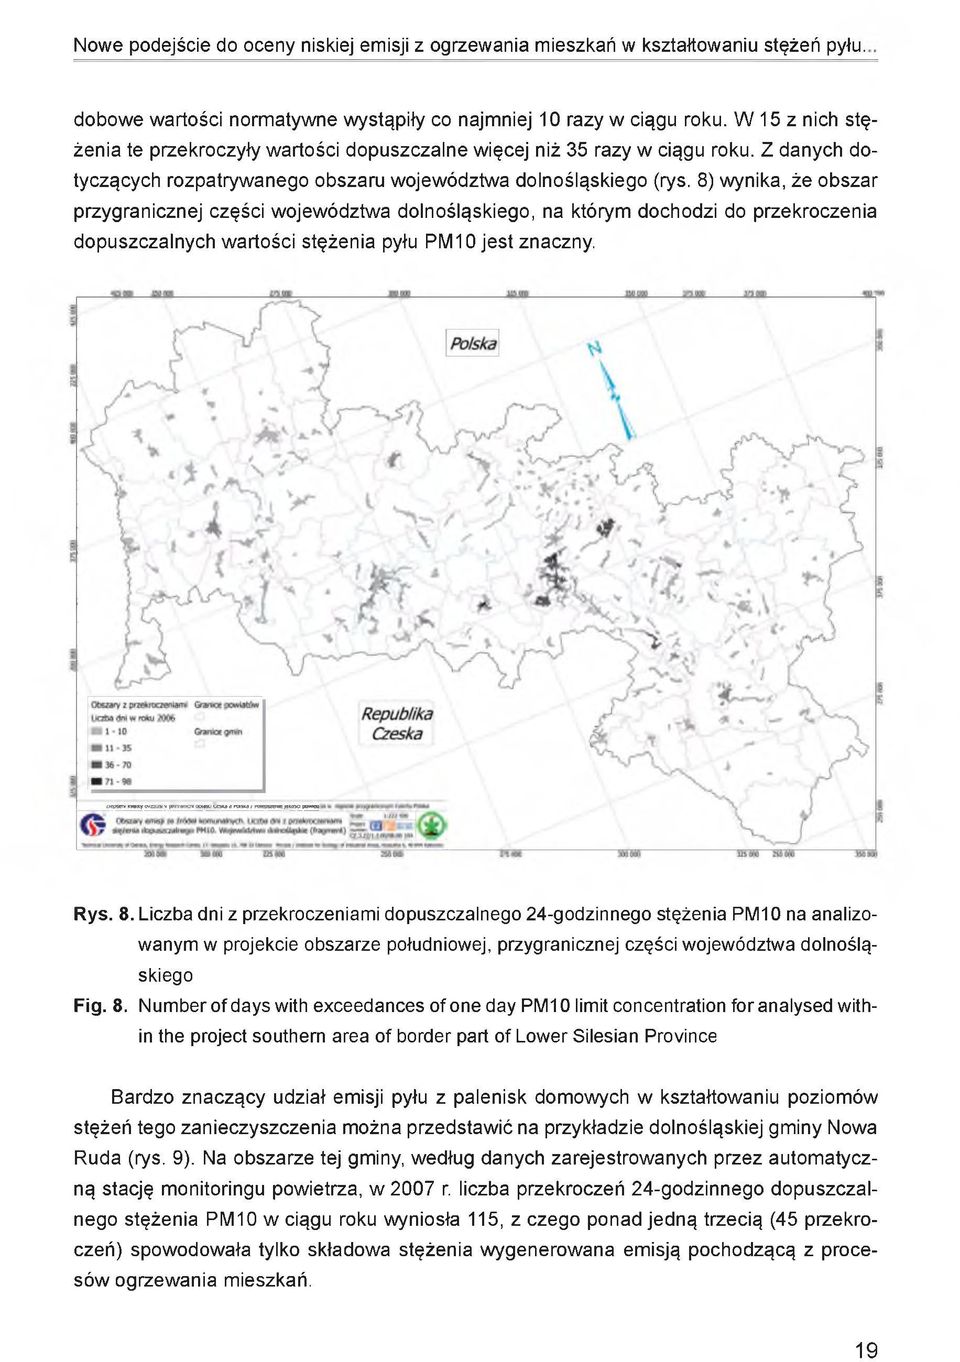 8) wynika, że obszar przygranicznej części województwa dolnośląskiego, na którym dochodzi do przekroczenia dopuszczalnych wartości stężenia pyłu PM10 jest znaczny. Rys. 8.